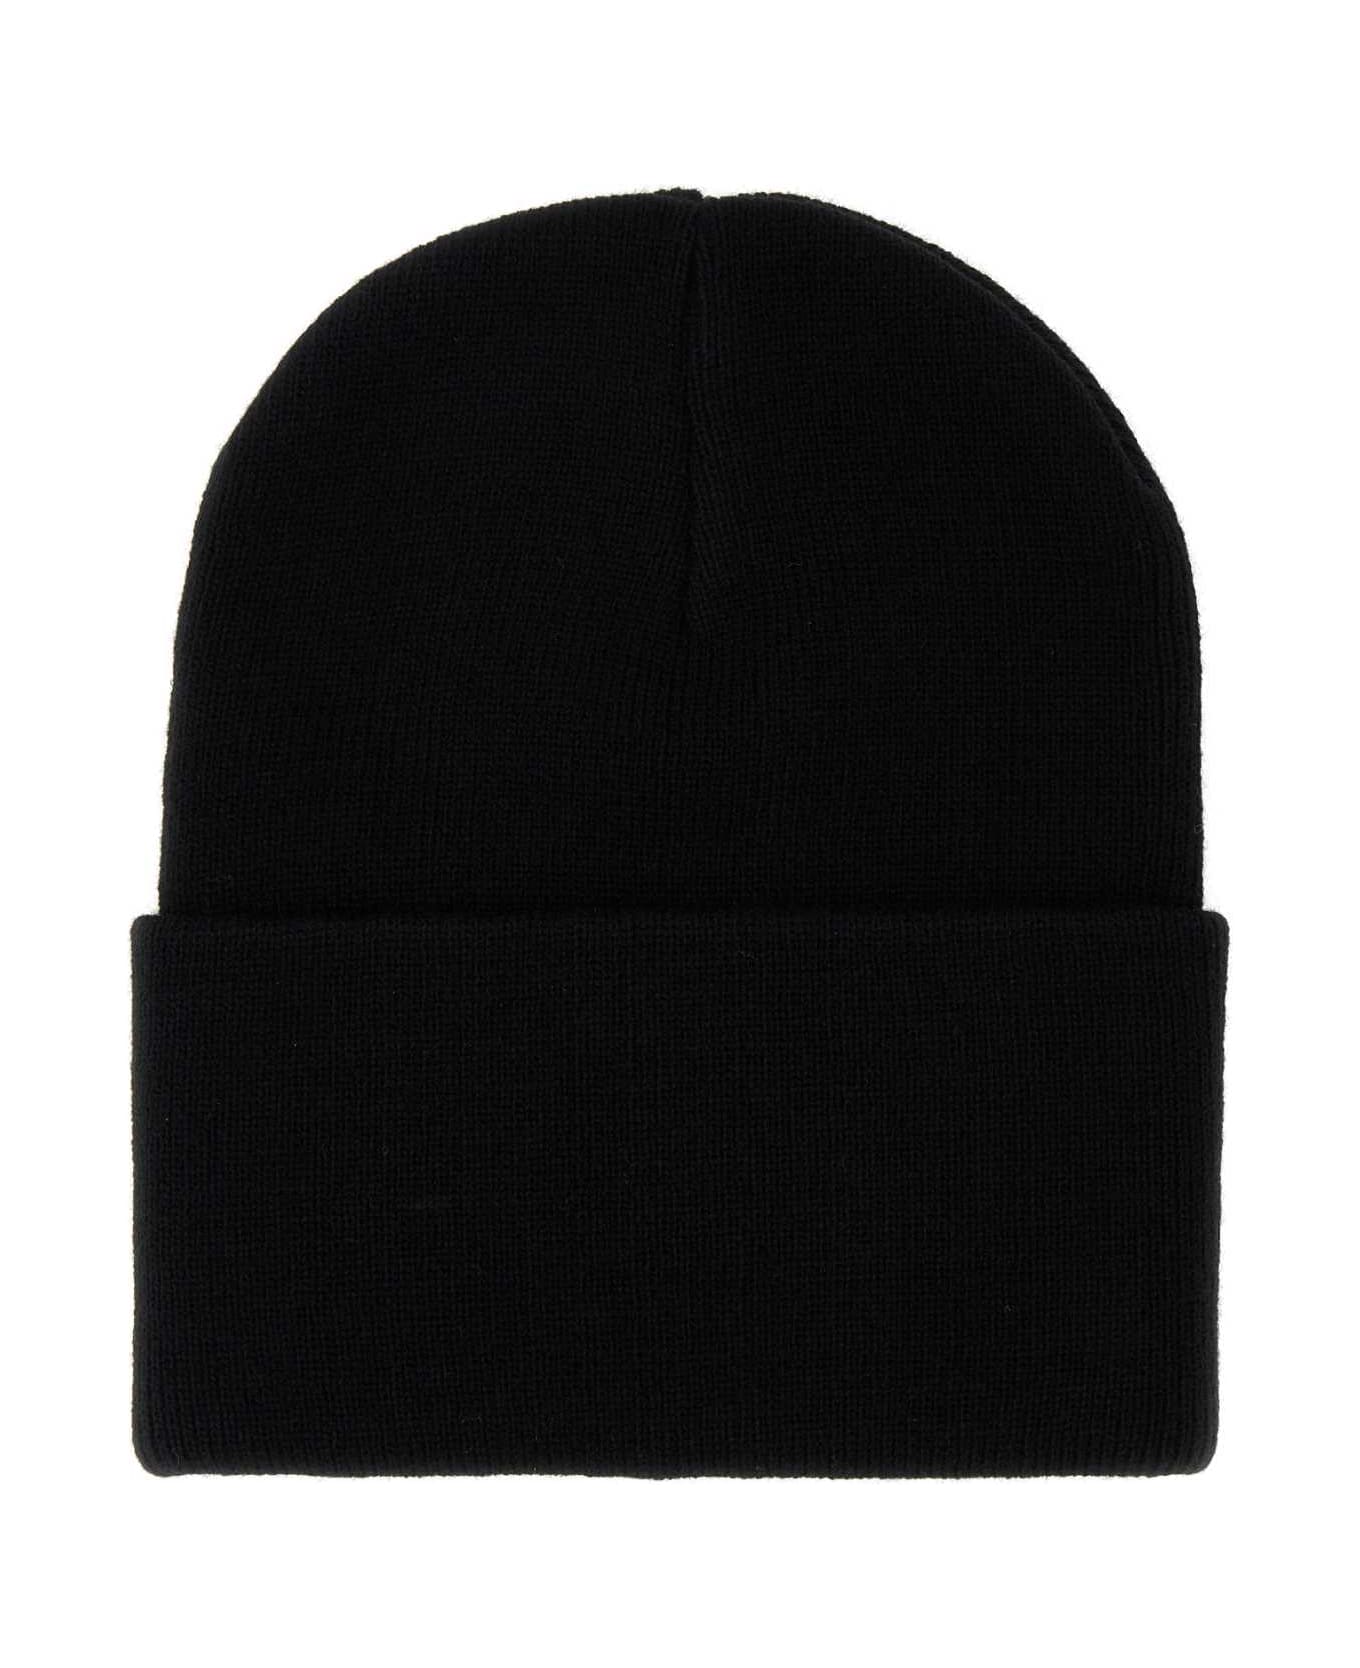 Carhartt Cappello - BLACK 帽子